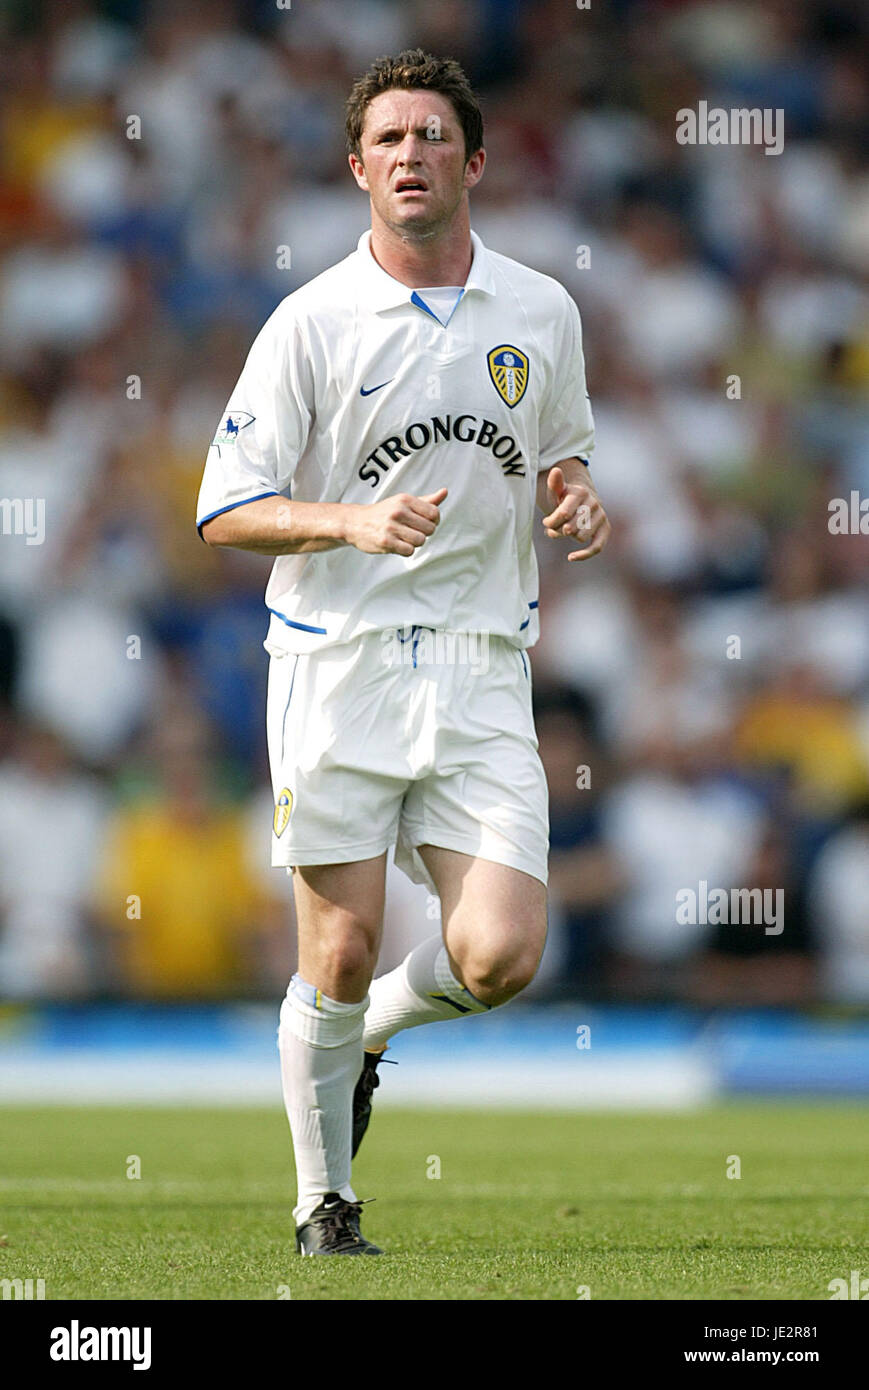 Robbie Keane - Wikipedia